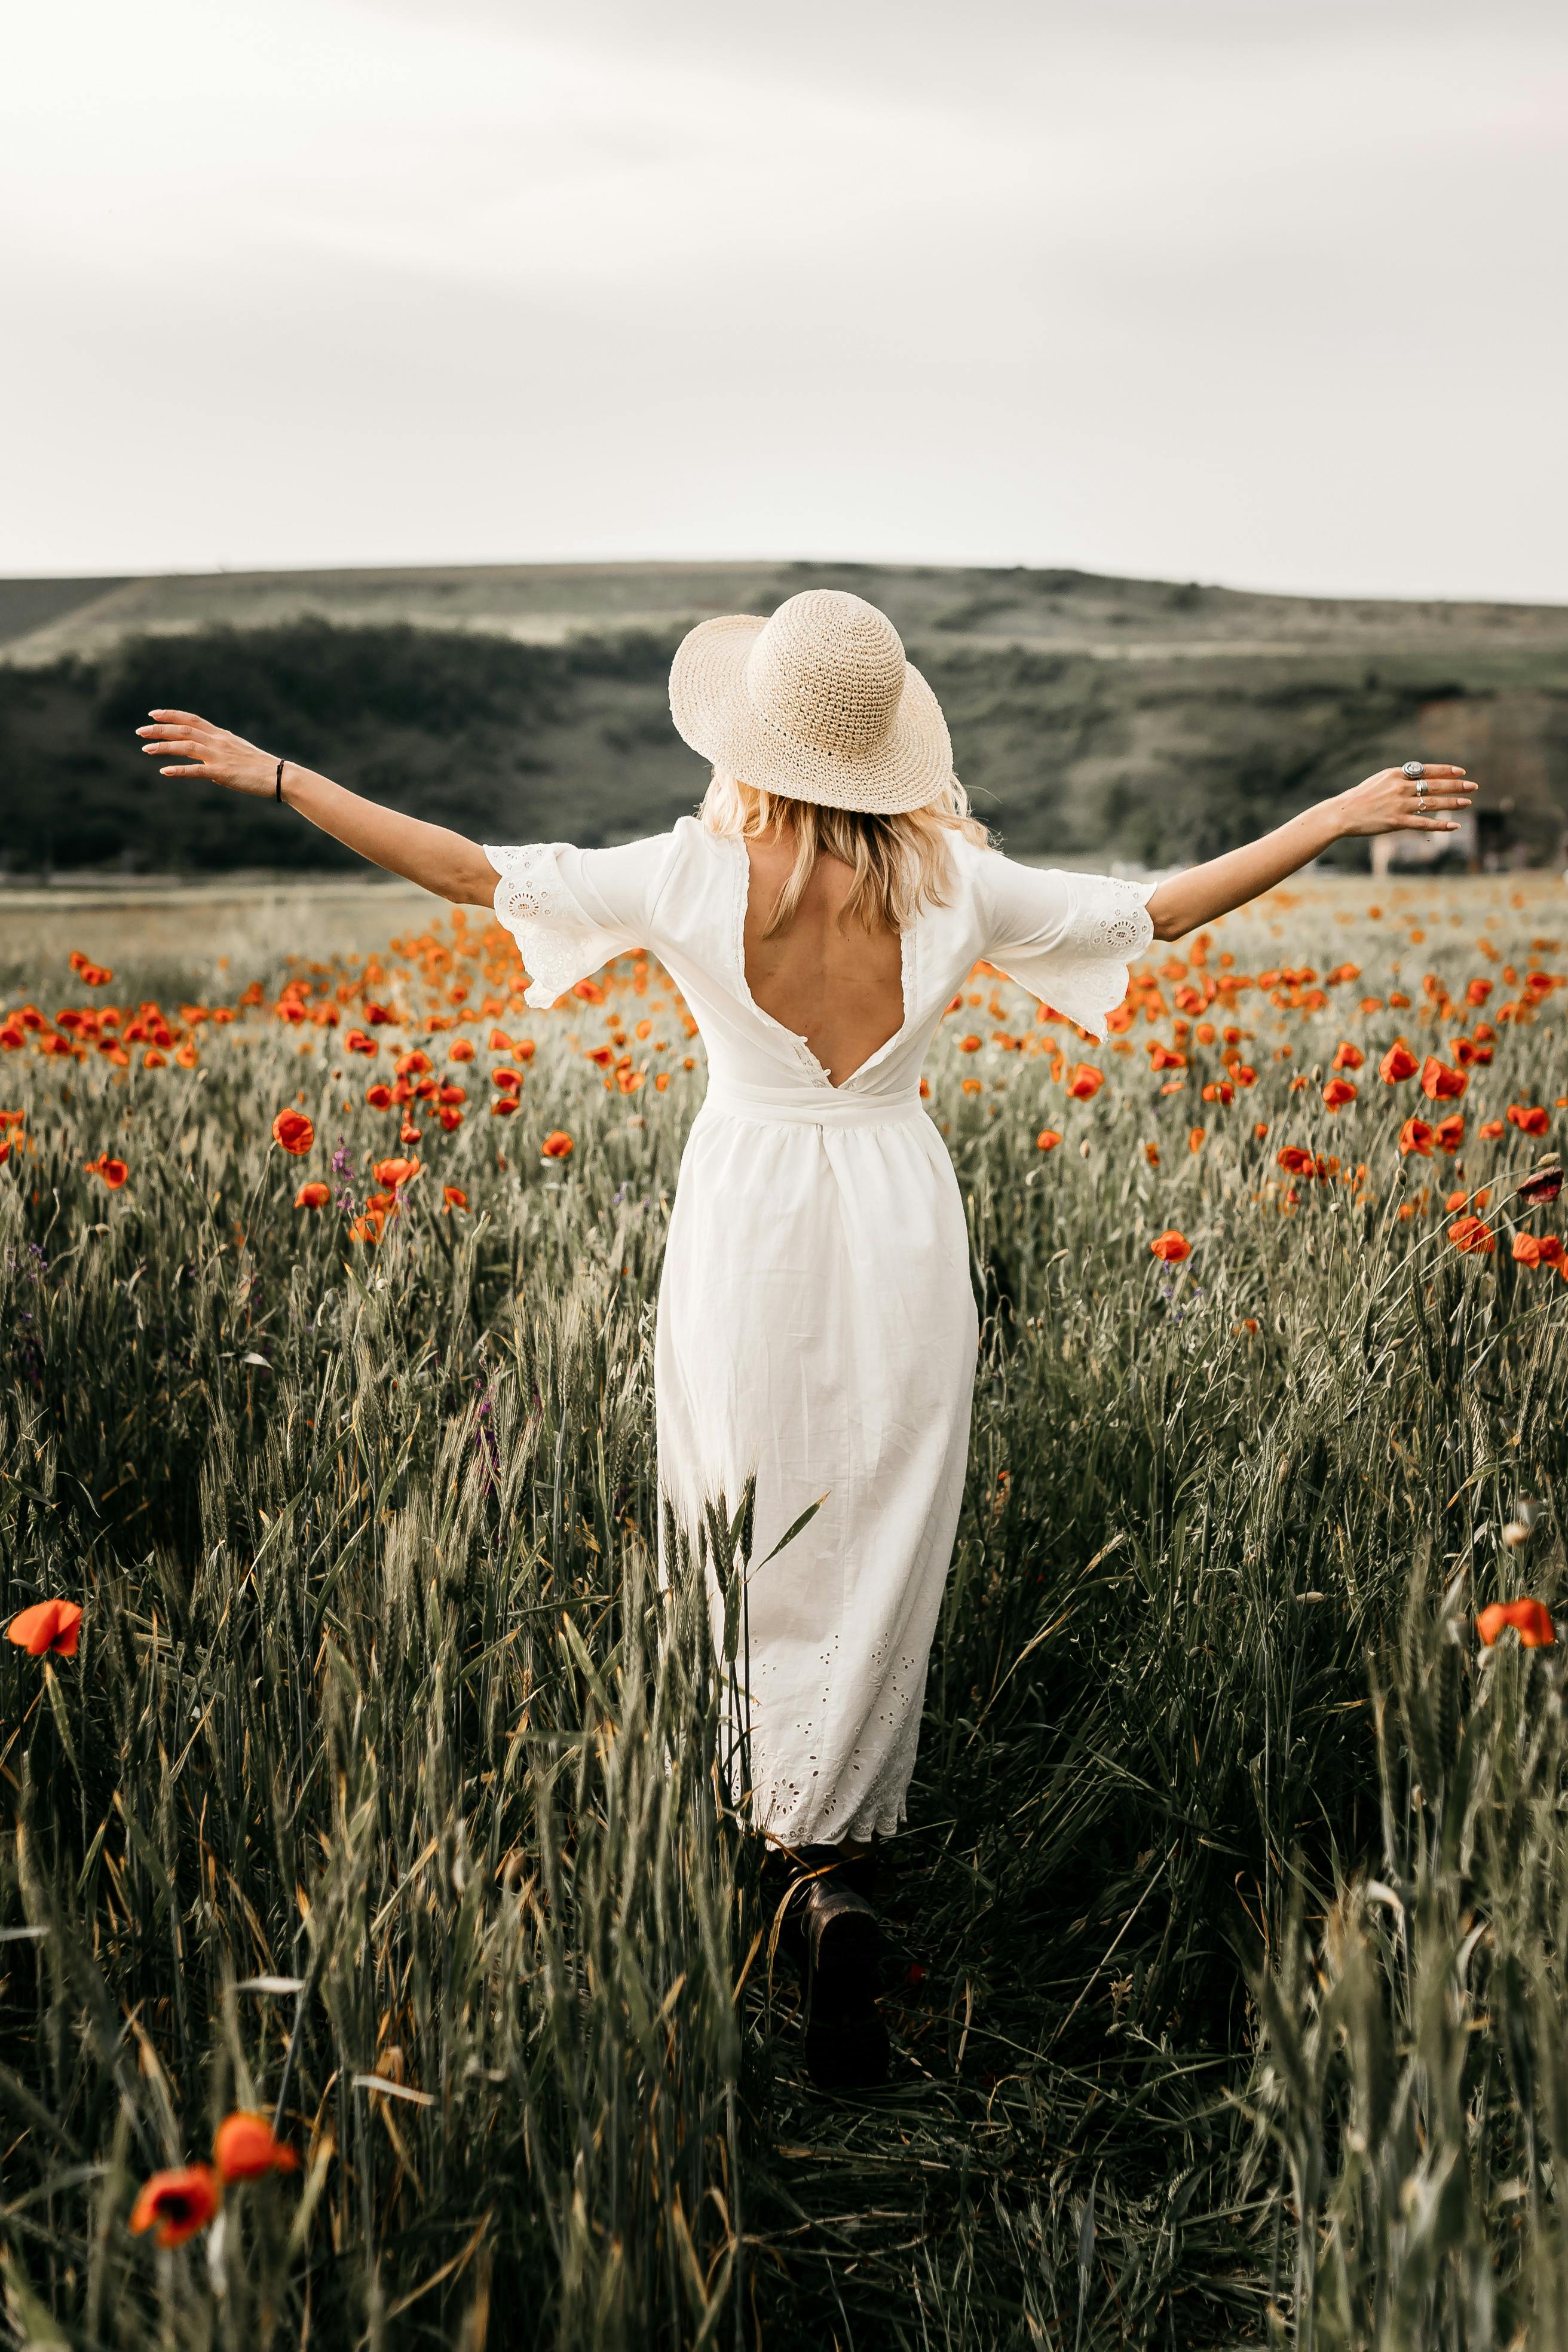 A woman taking a walk in a field | Source: Pexels